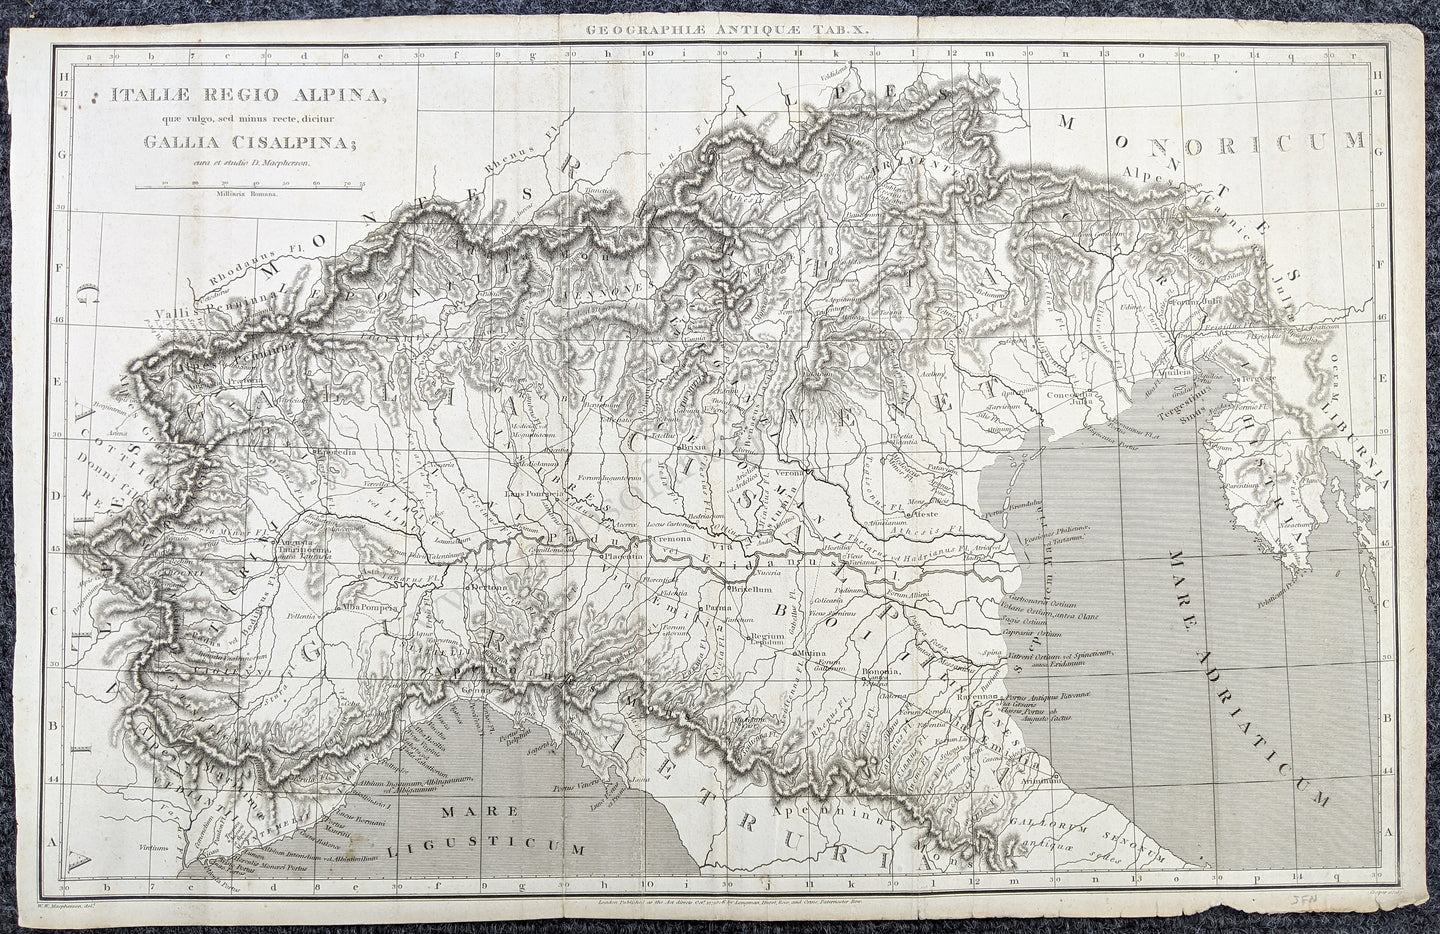 Genuine-Antique-Map-Alpine-Country---Italiae-Regio-Alpina-quae-vulgo-sed-minus-recte-dicitur-Gallia-Cisalpina-Europe-Italy-1806-Longman-Hurst-Rees-&-Orme-Maps-Of-Antiquity-1800s-19th-century